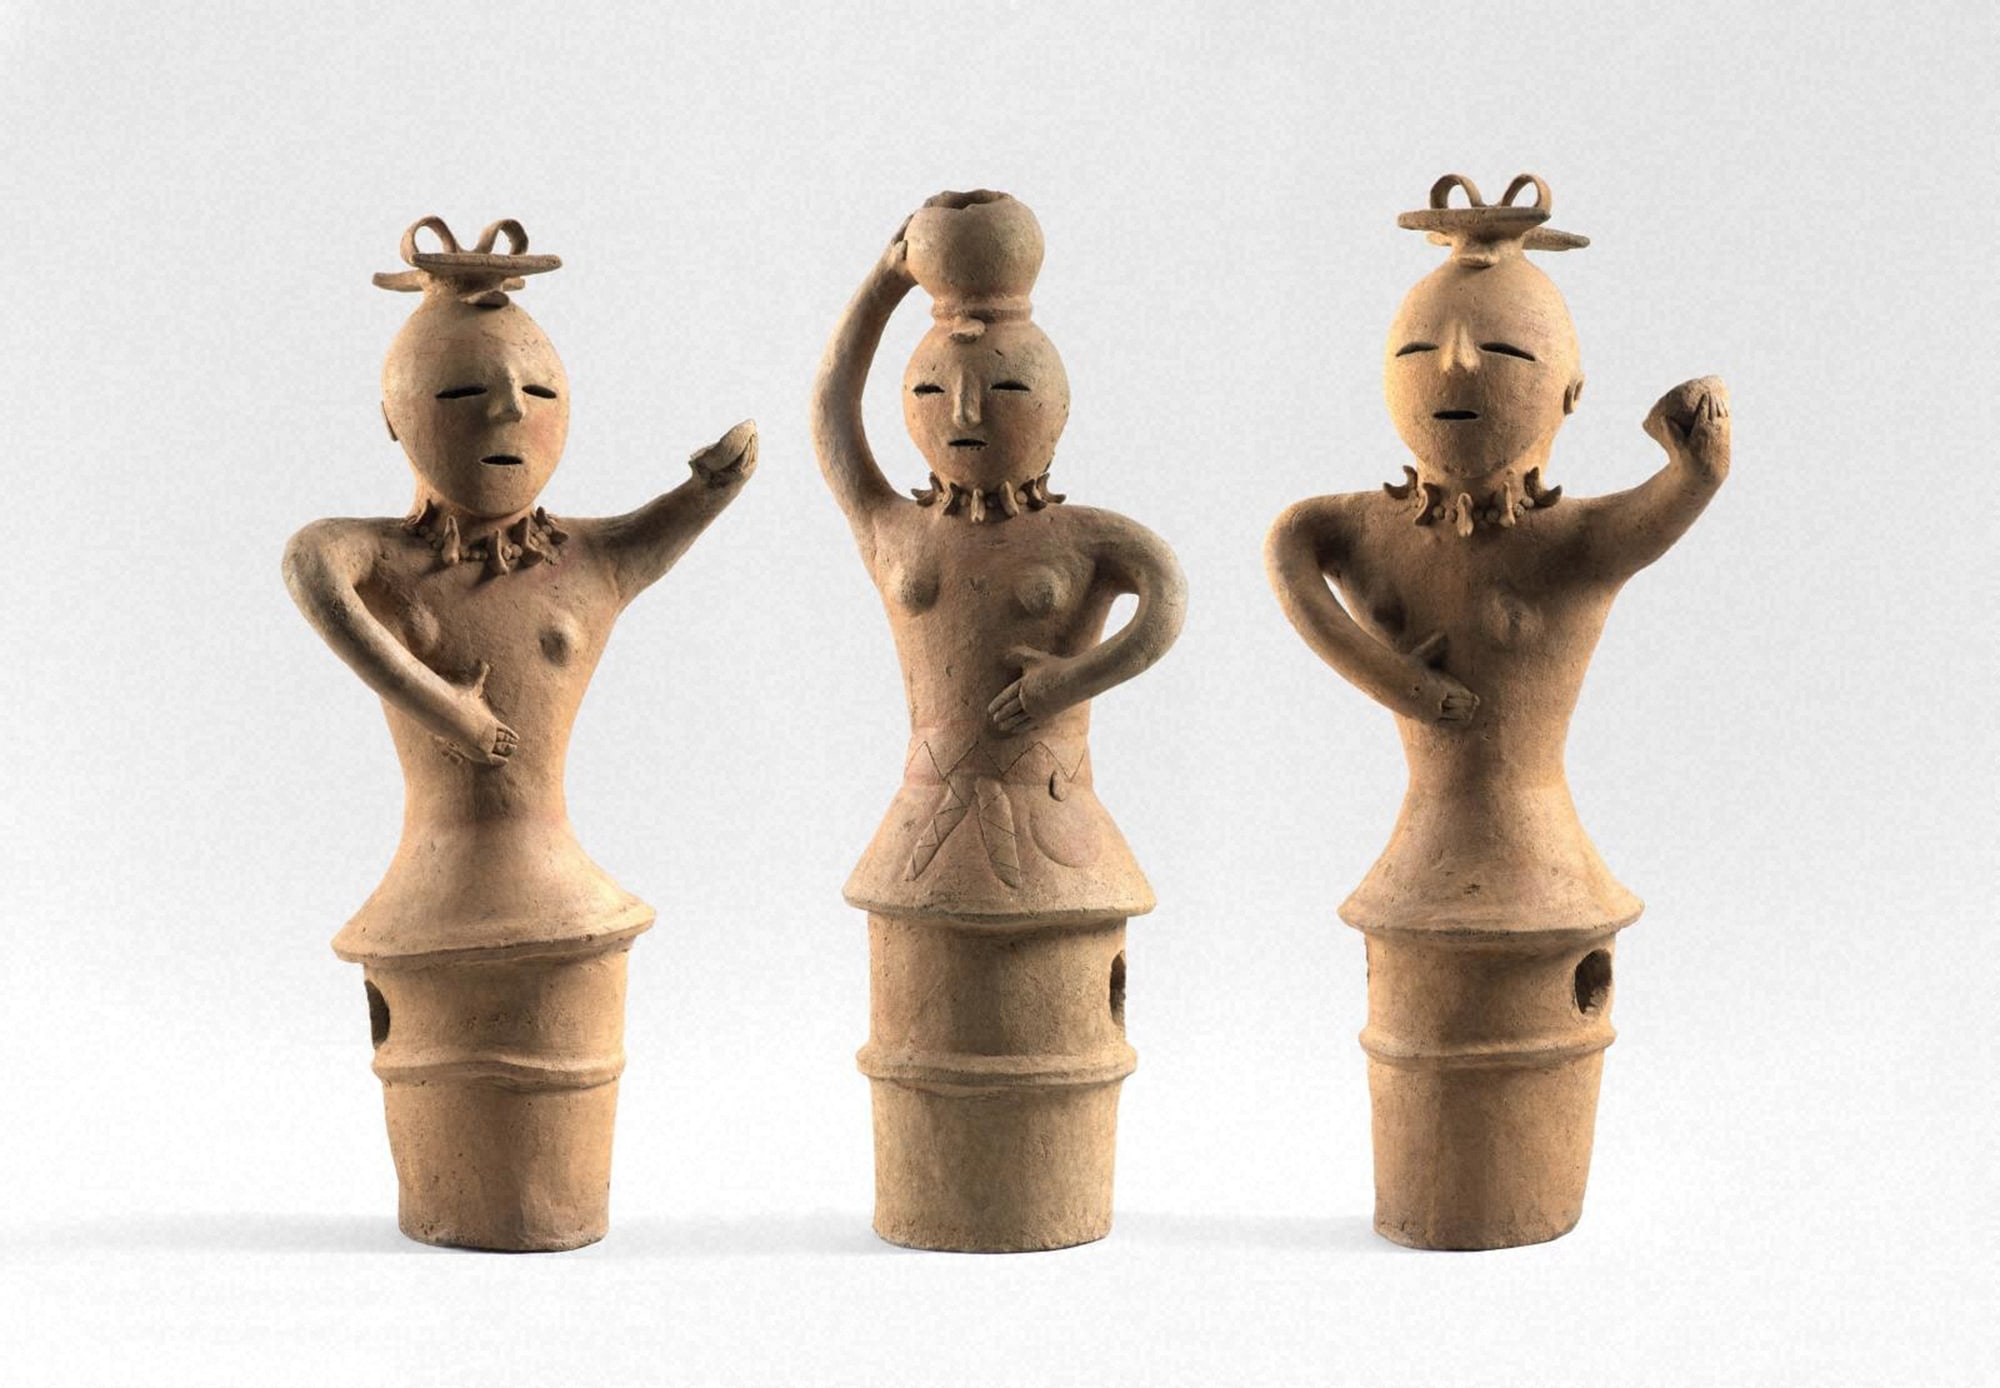 特徴を捉えた単純な造形と素朴さが魅力の埴輪。 《杯を持つ女性たち》、《壺をのせる女性》古墳時代5〜6世紀